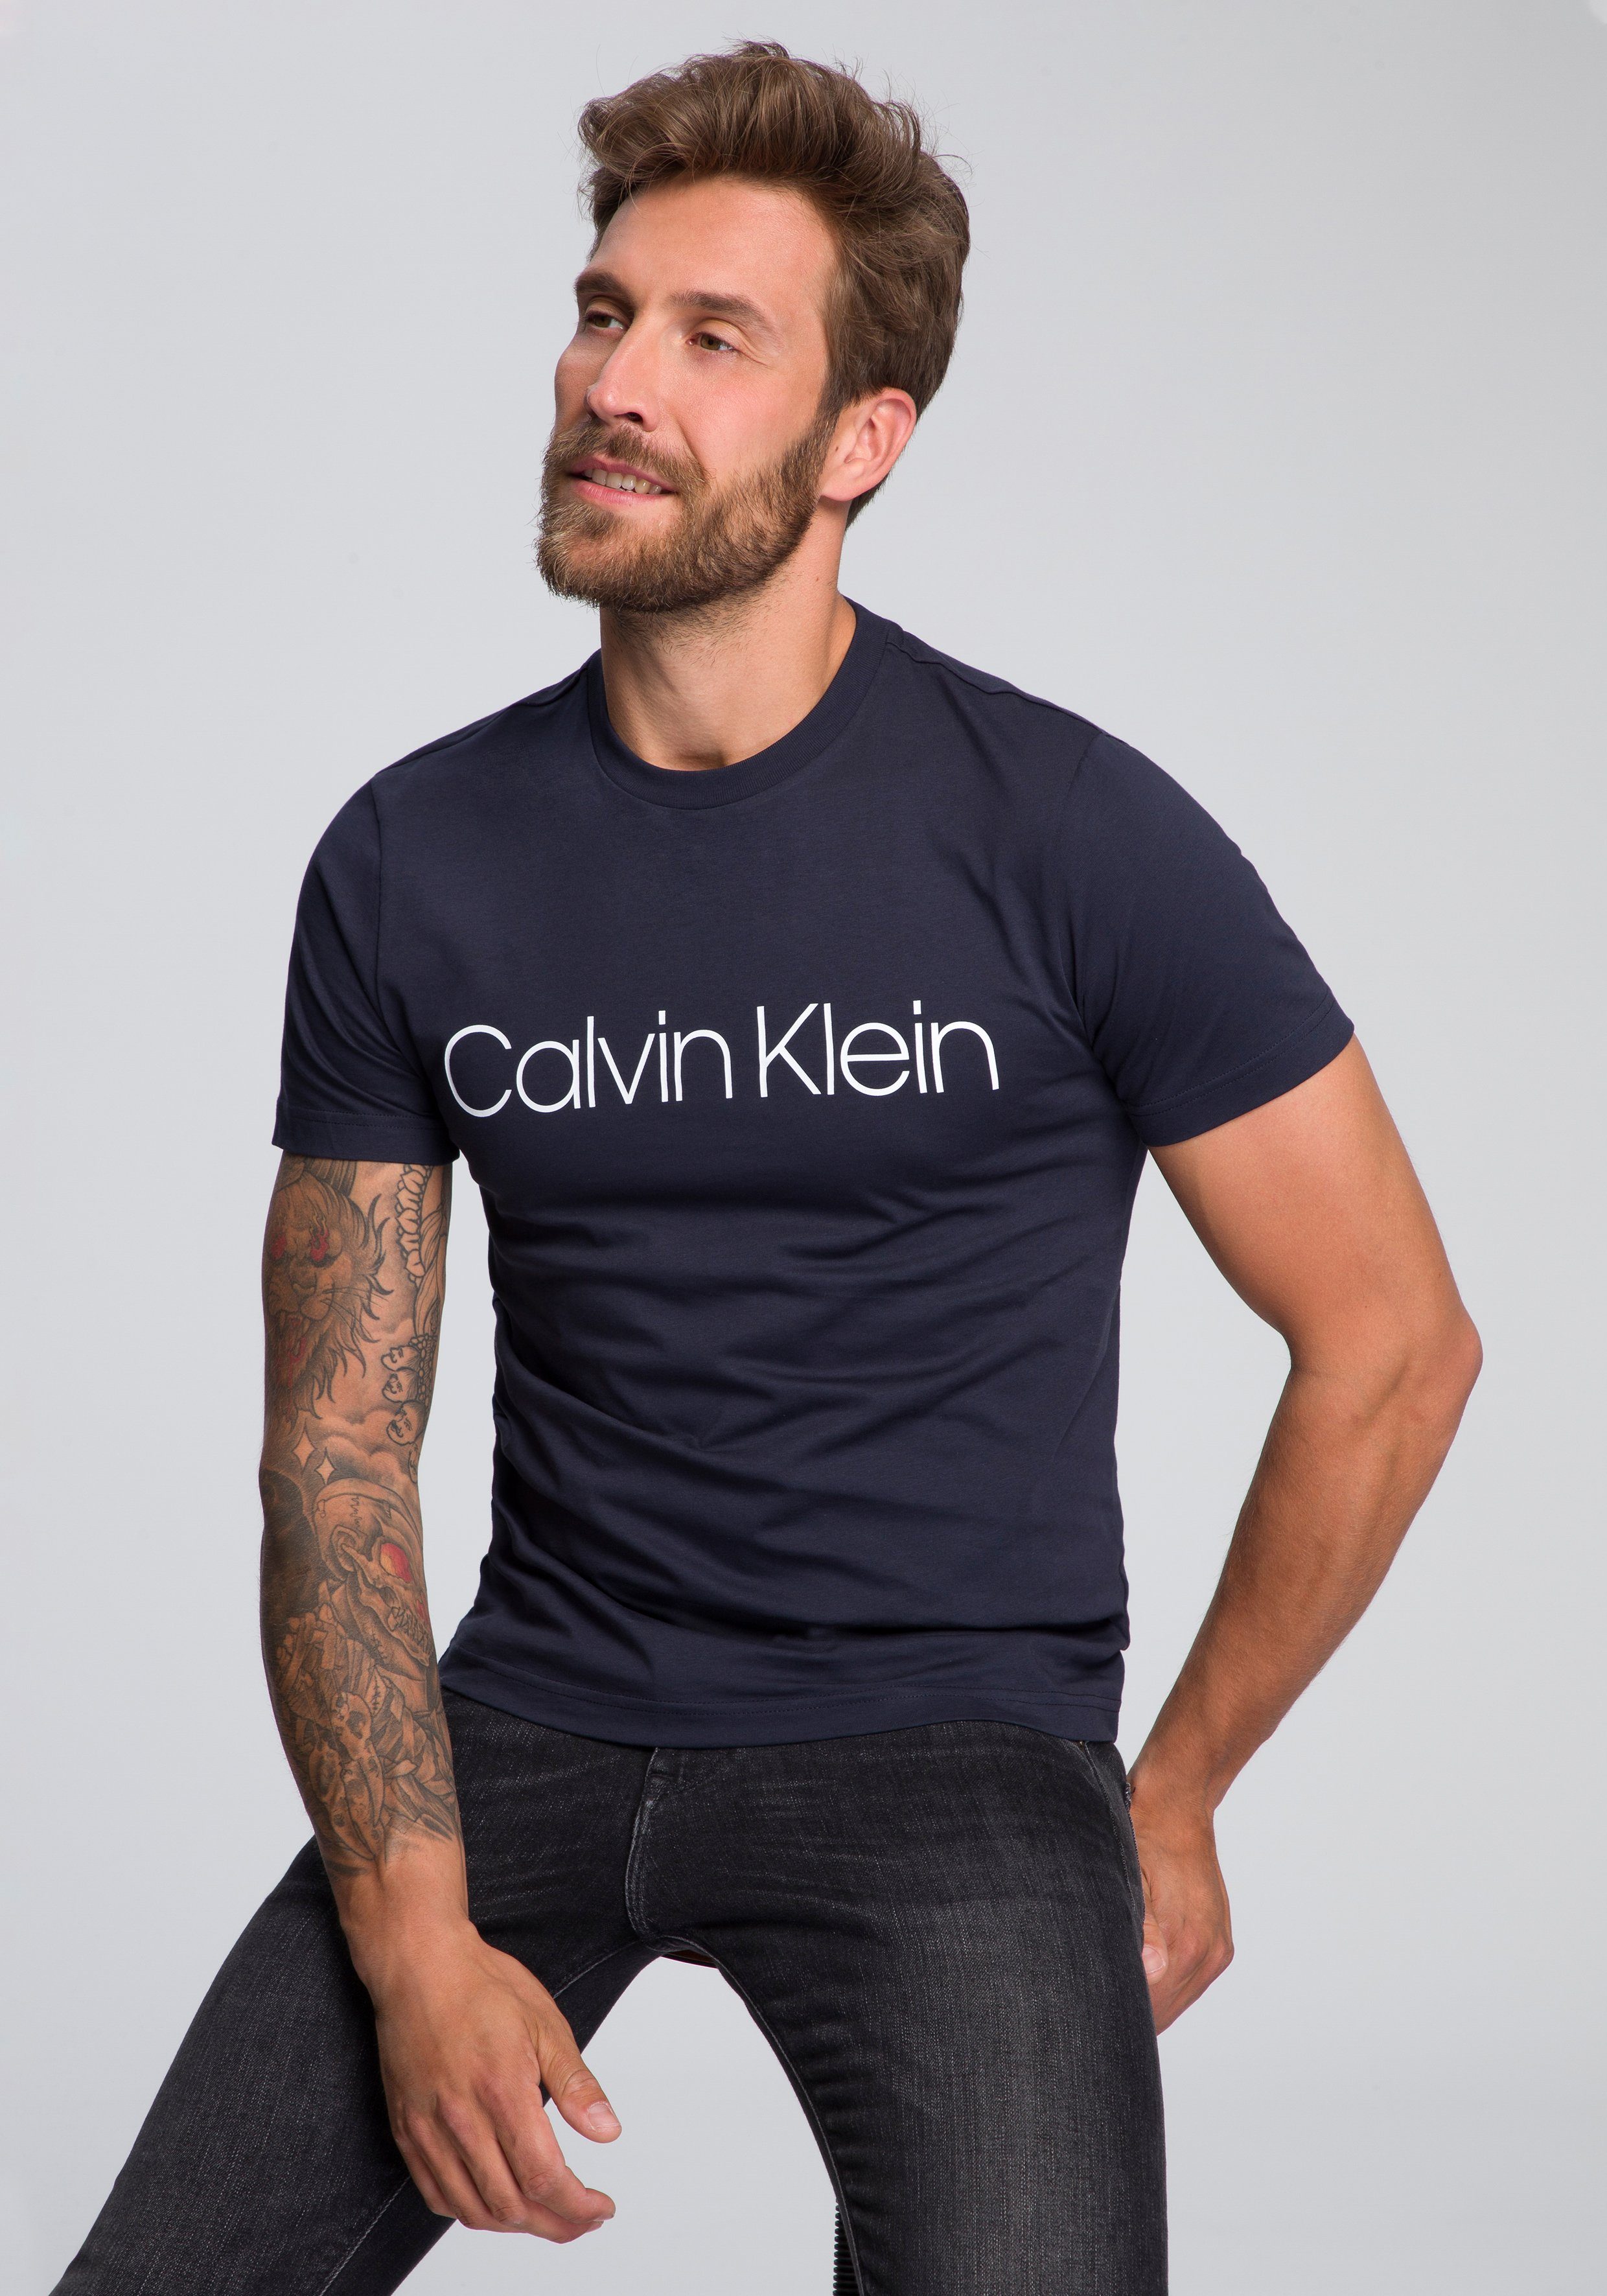 Calvin Klein Herren Online-Shop | OTTO